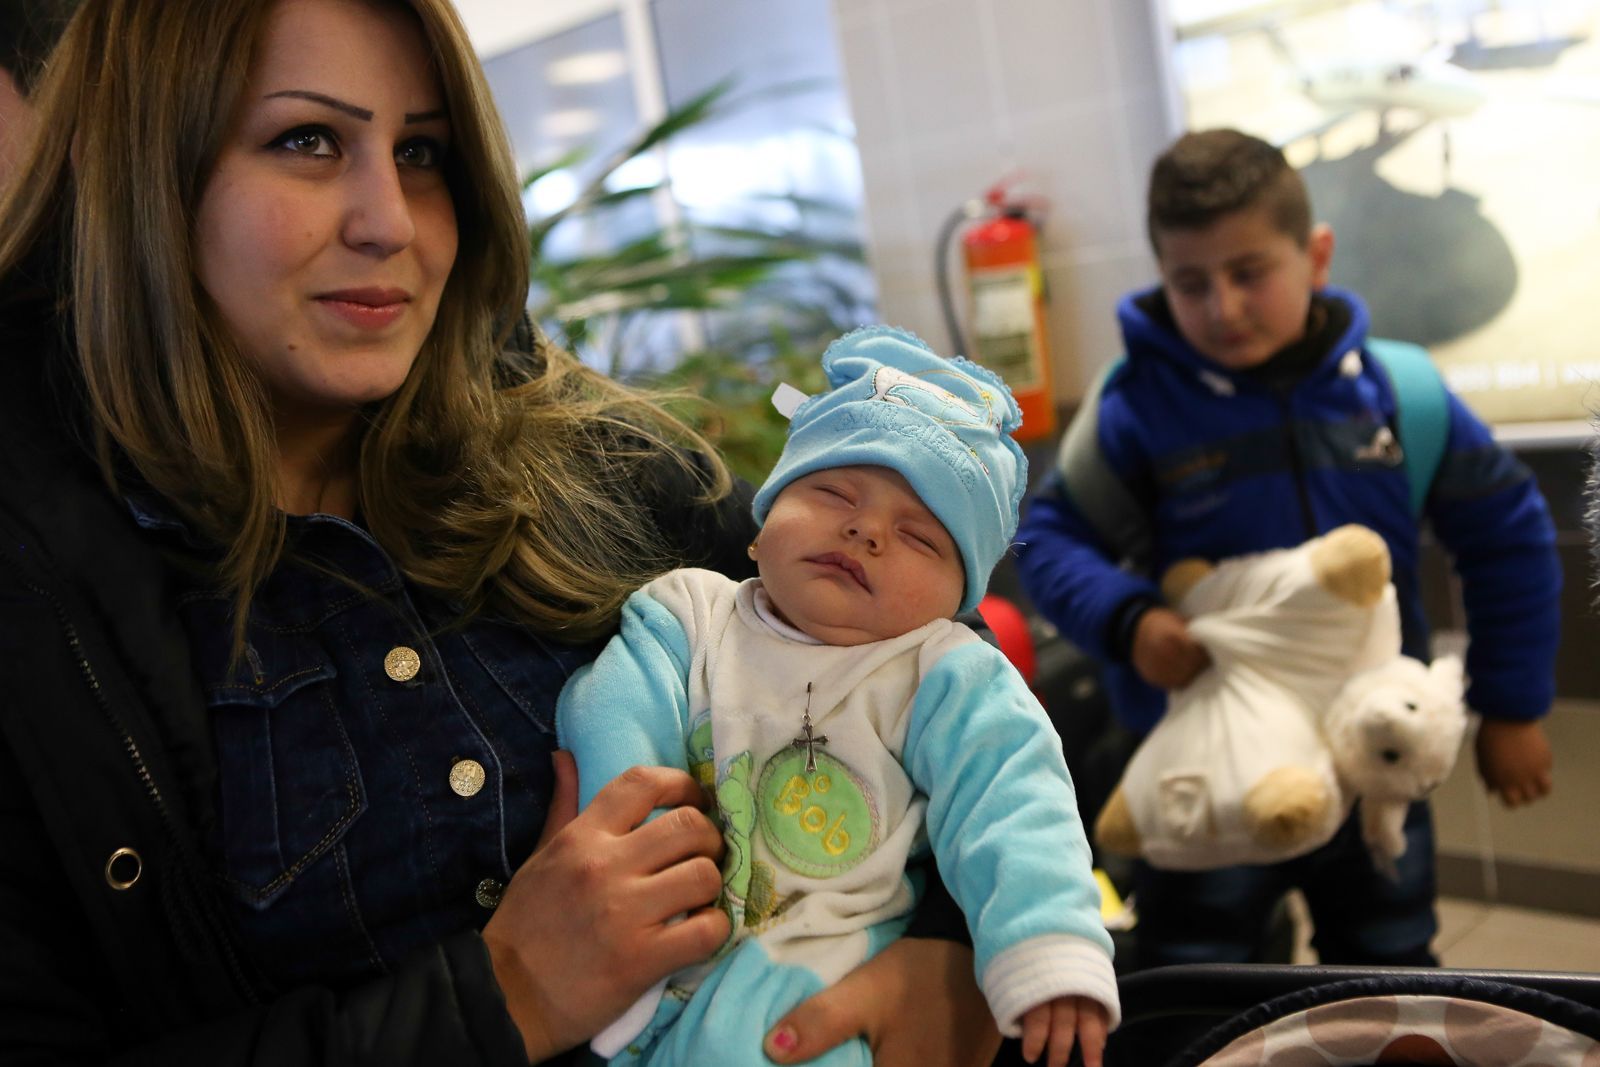 Přílet iráckých křesťanských uprchlíků do Prahy